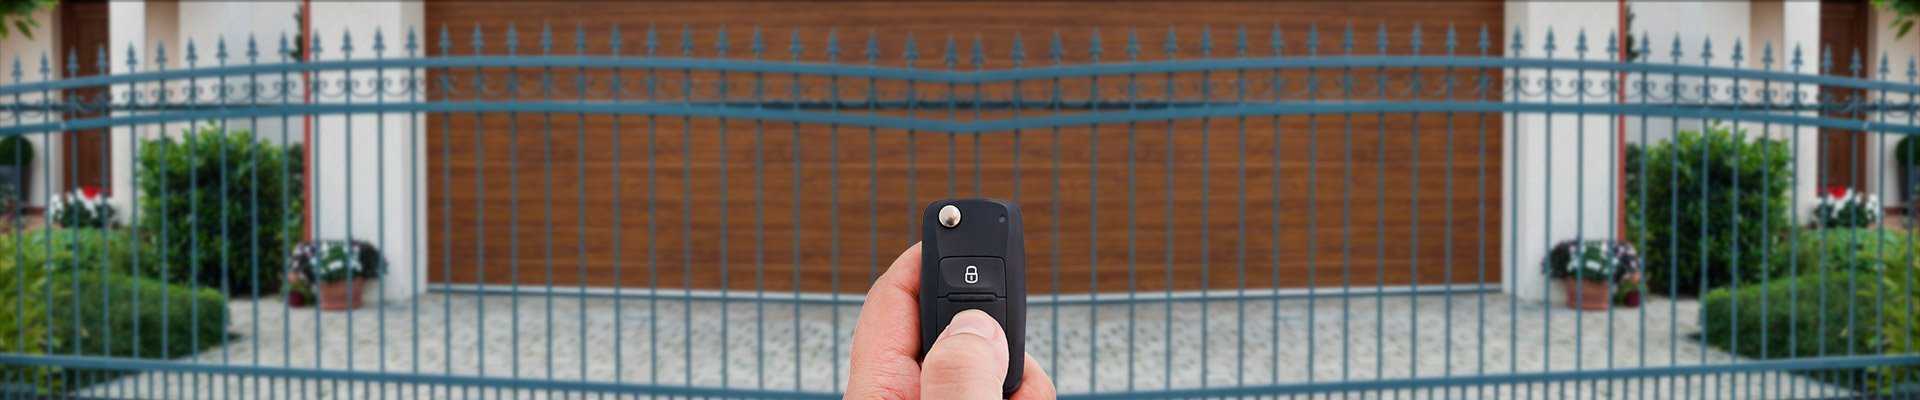 Sprzęt parkingowy  -  Bramy garażowe  -  Urządzenia do kontroli dostępu  -  Akcesoria zabezpieczające i sterujące